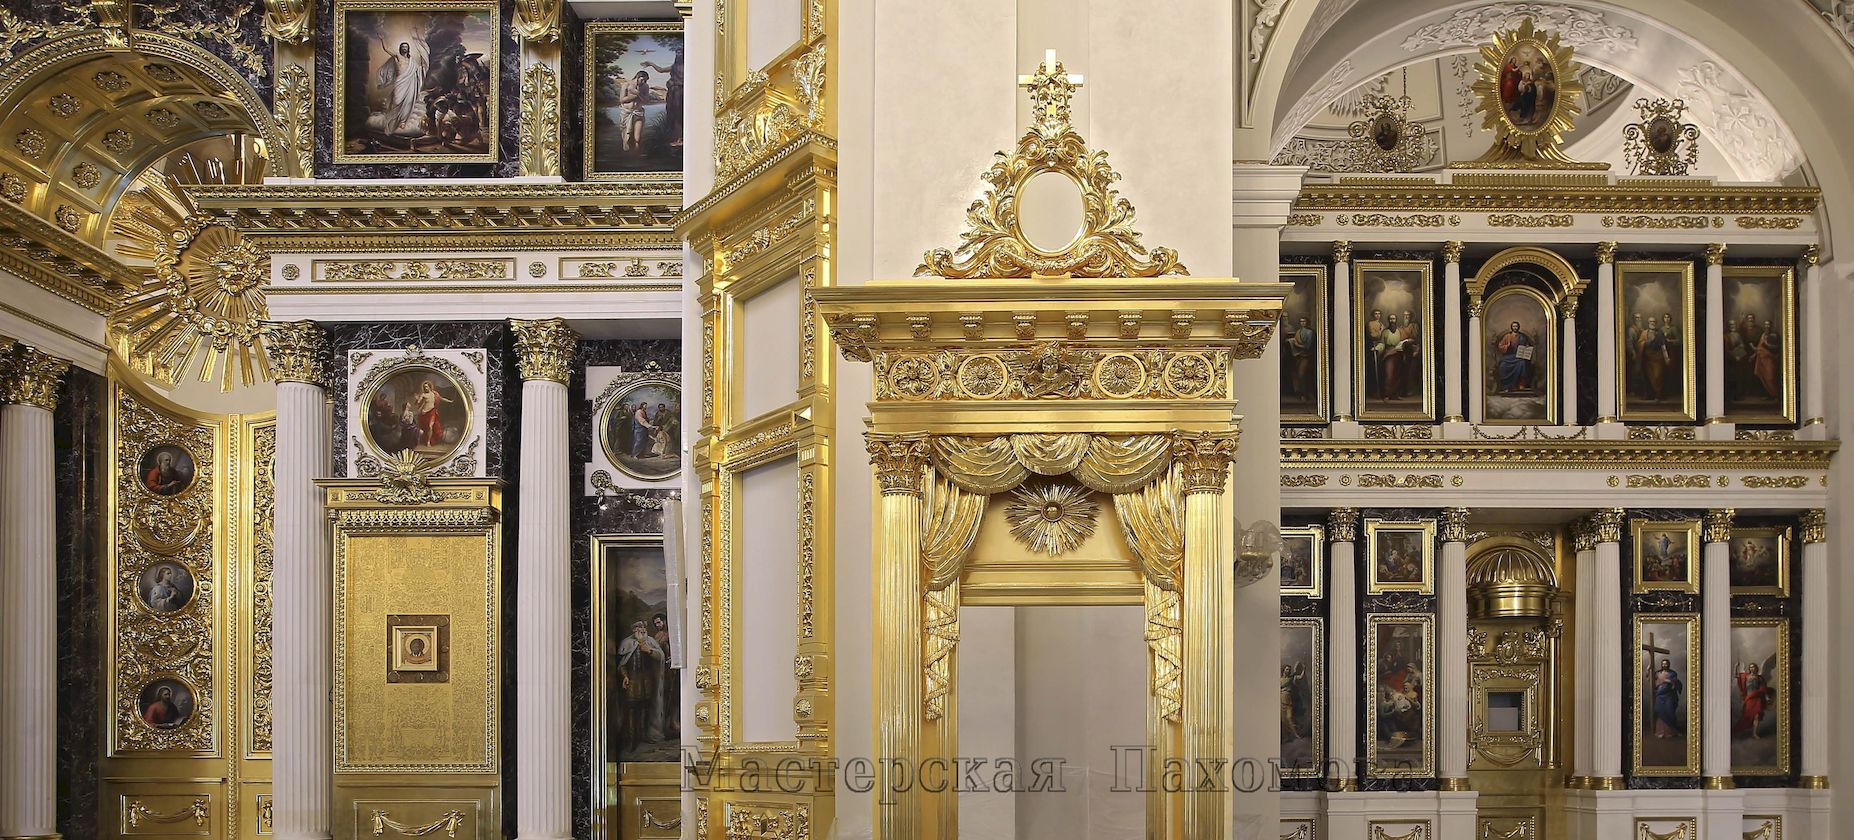 Фото В Казанском соборе нашей мастерской воссоздано три иконостаса - северный, центральный и южный